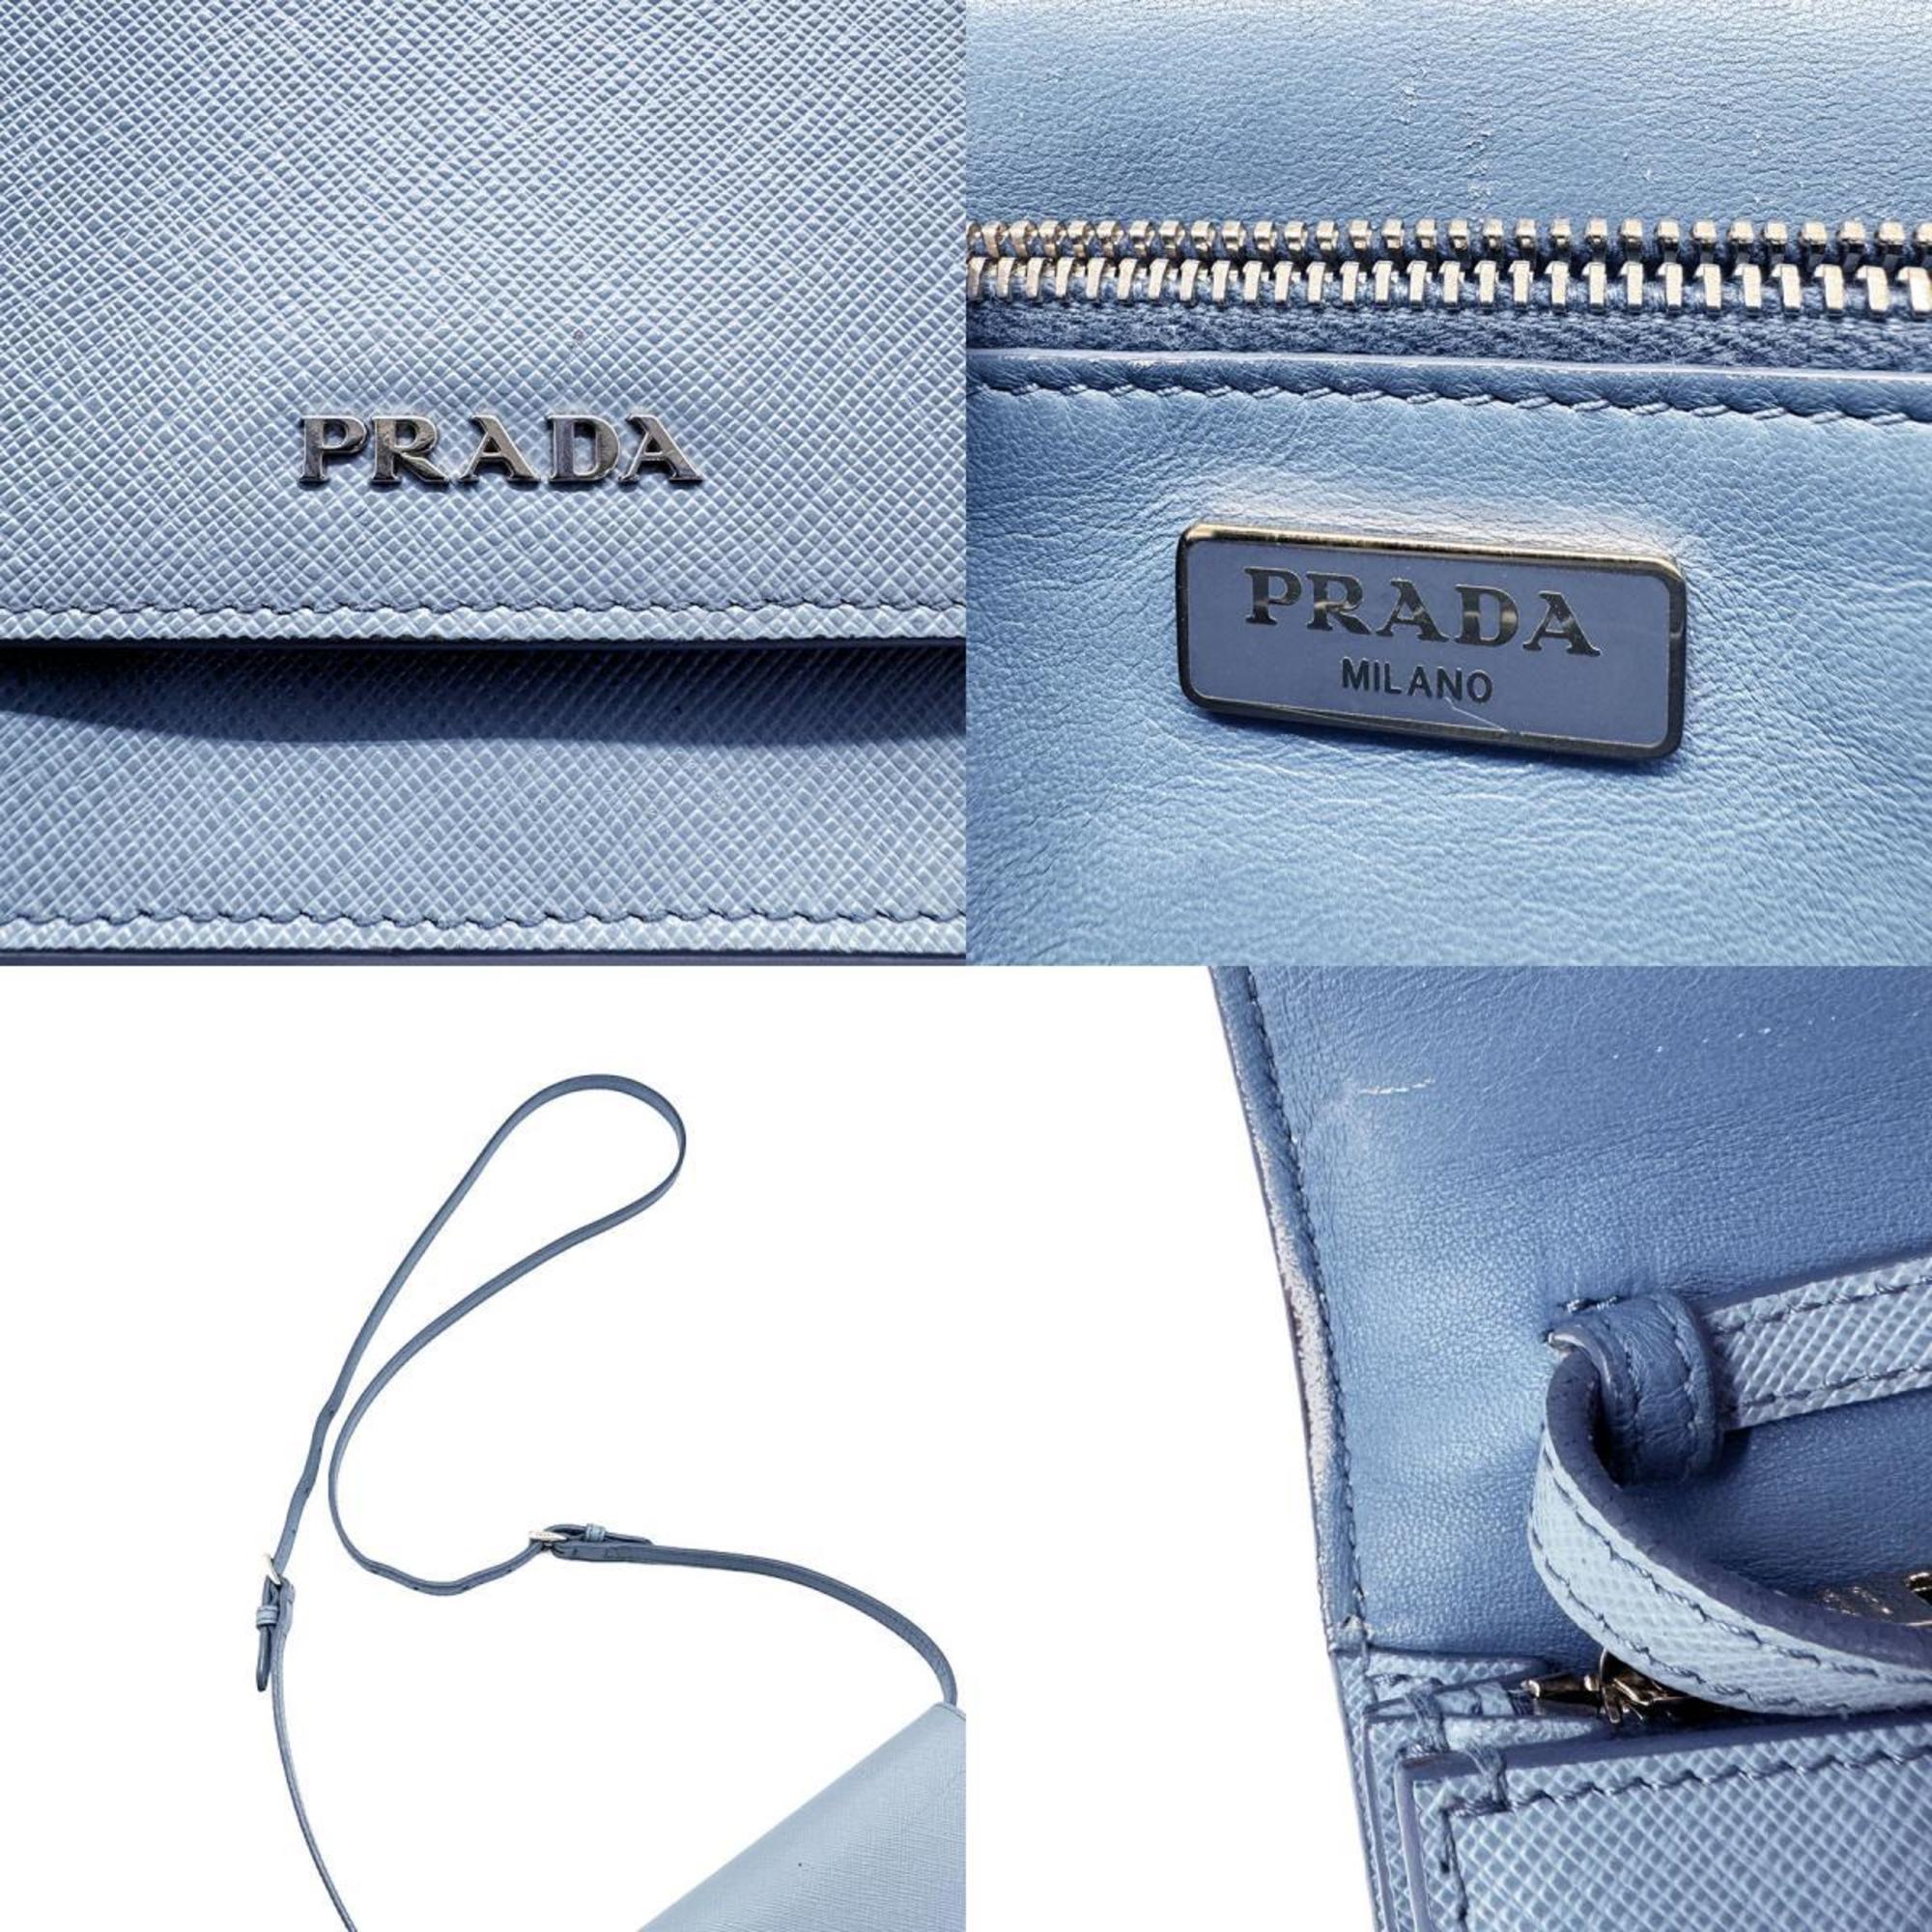 PRADA Shoulder Bag Wallet Leather Light Blue Women's z0437